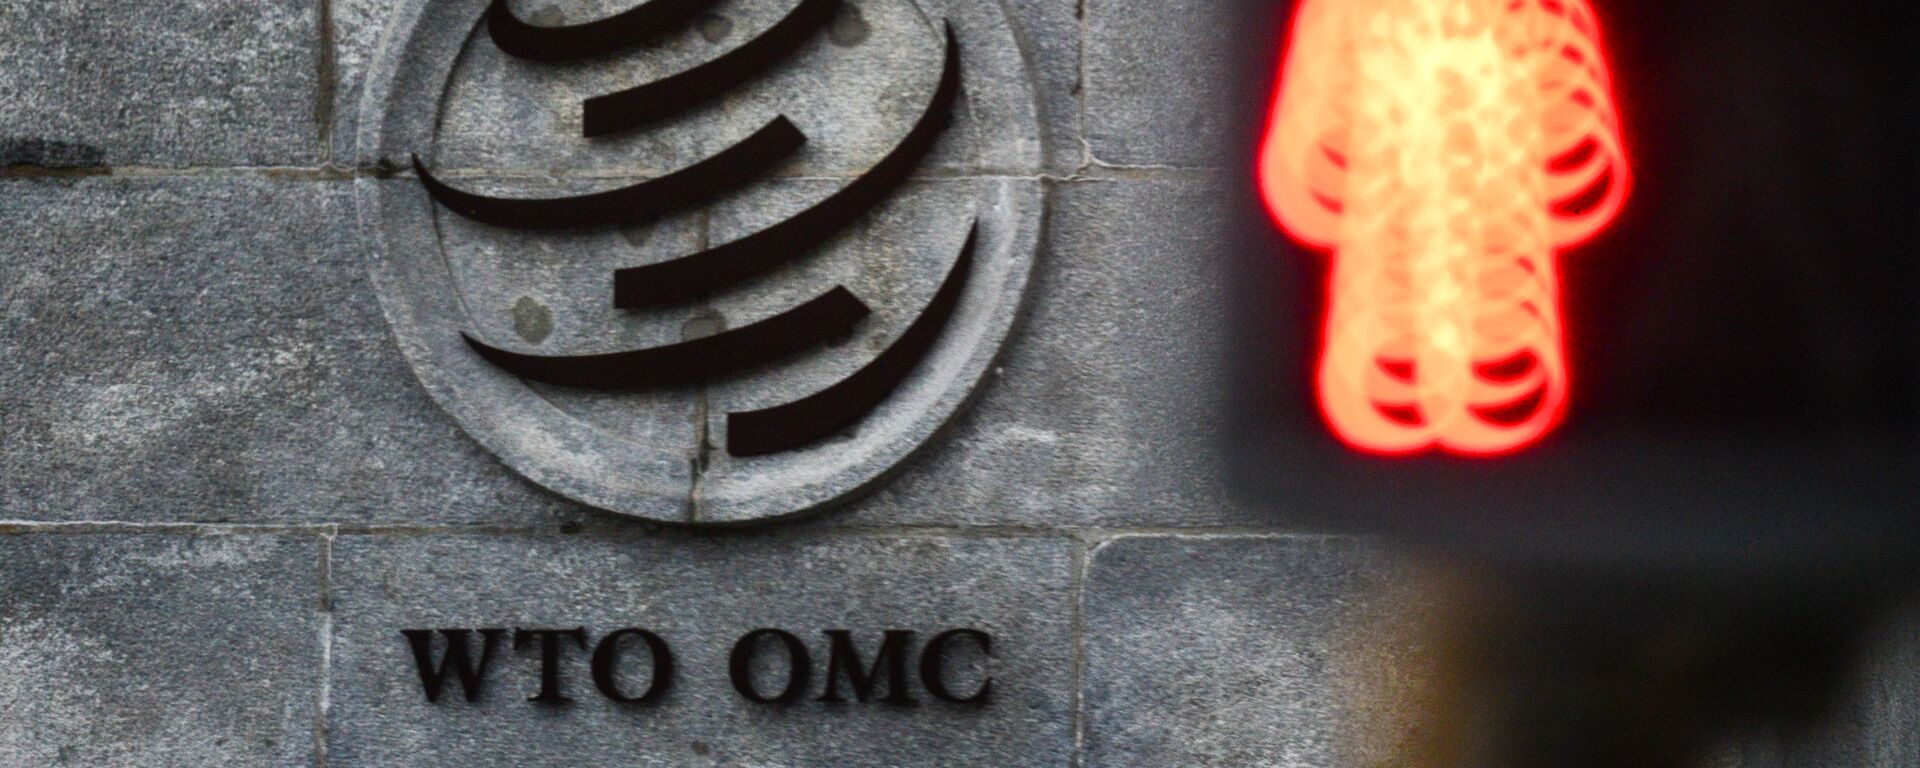 Эмблема Всемирной торговой организации (ВТО) возле здания штаб-квартиры организации в Женеве - Sputnik Узбекистан, 1920, 23.02.2021